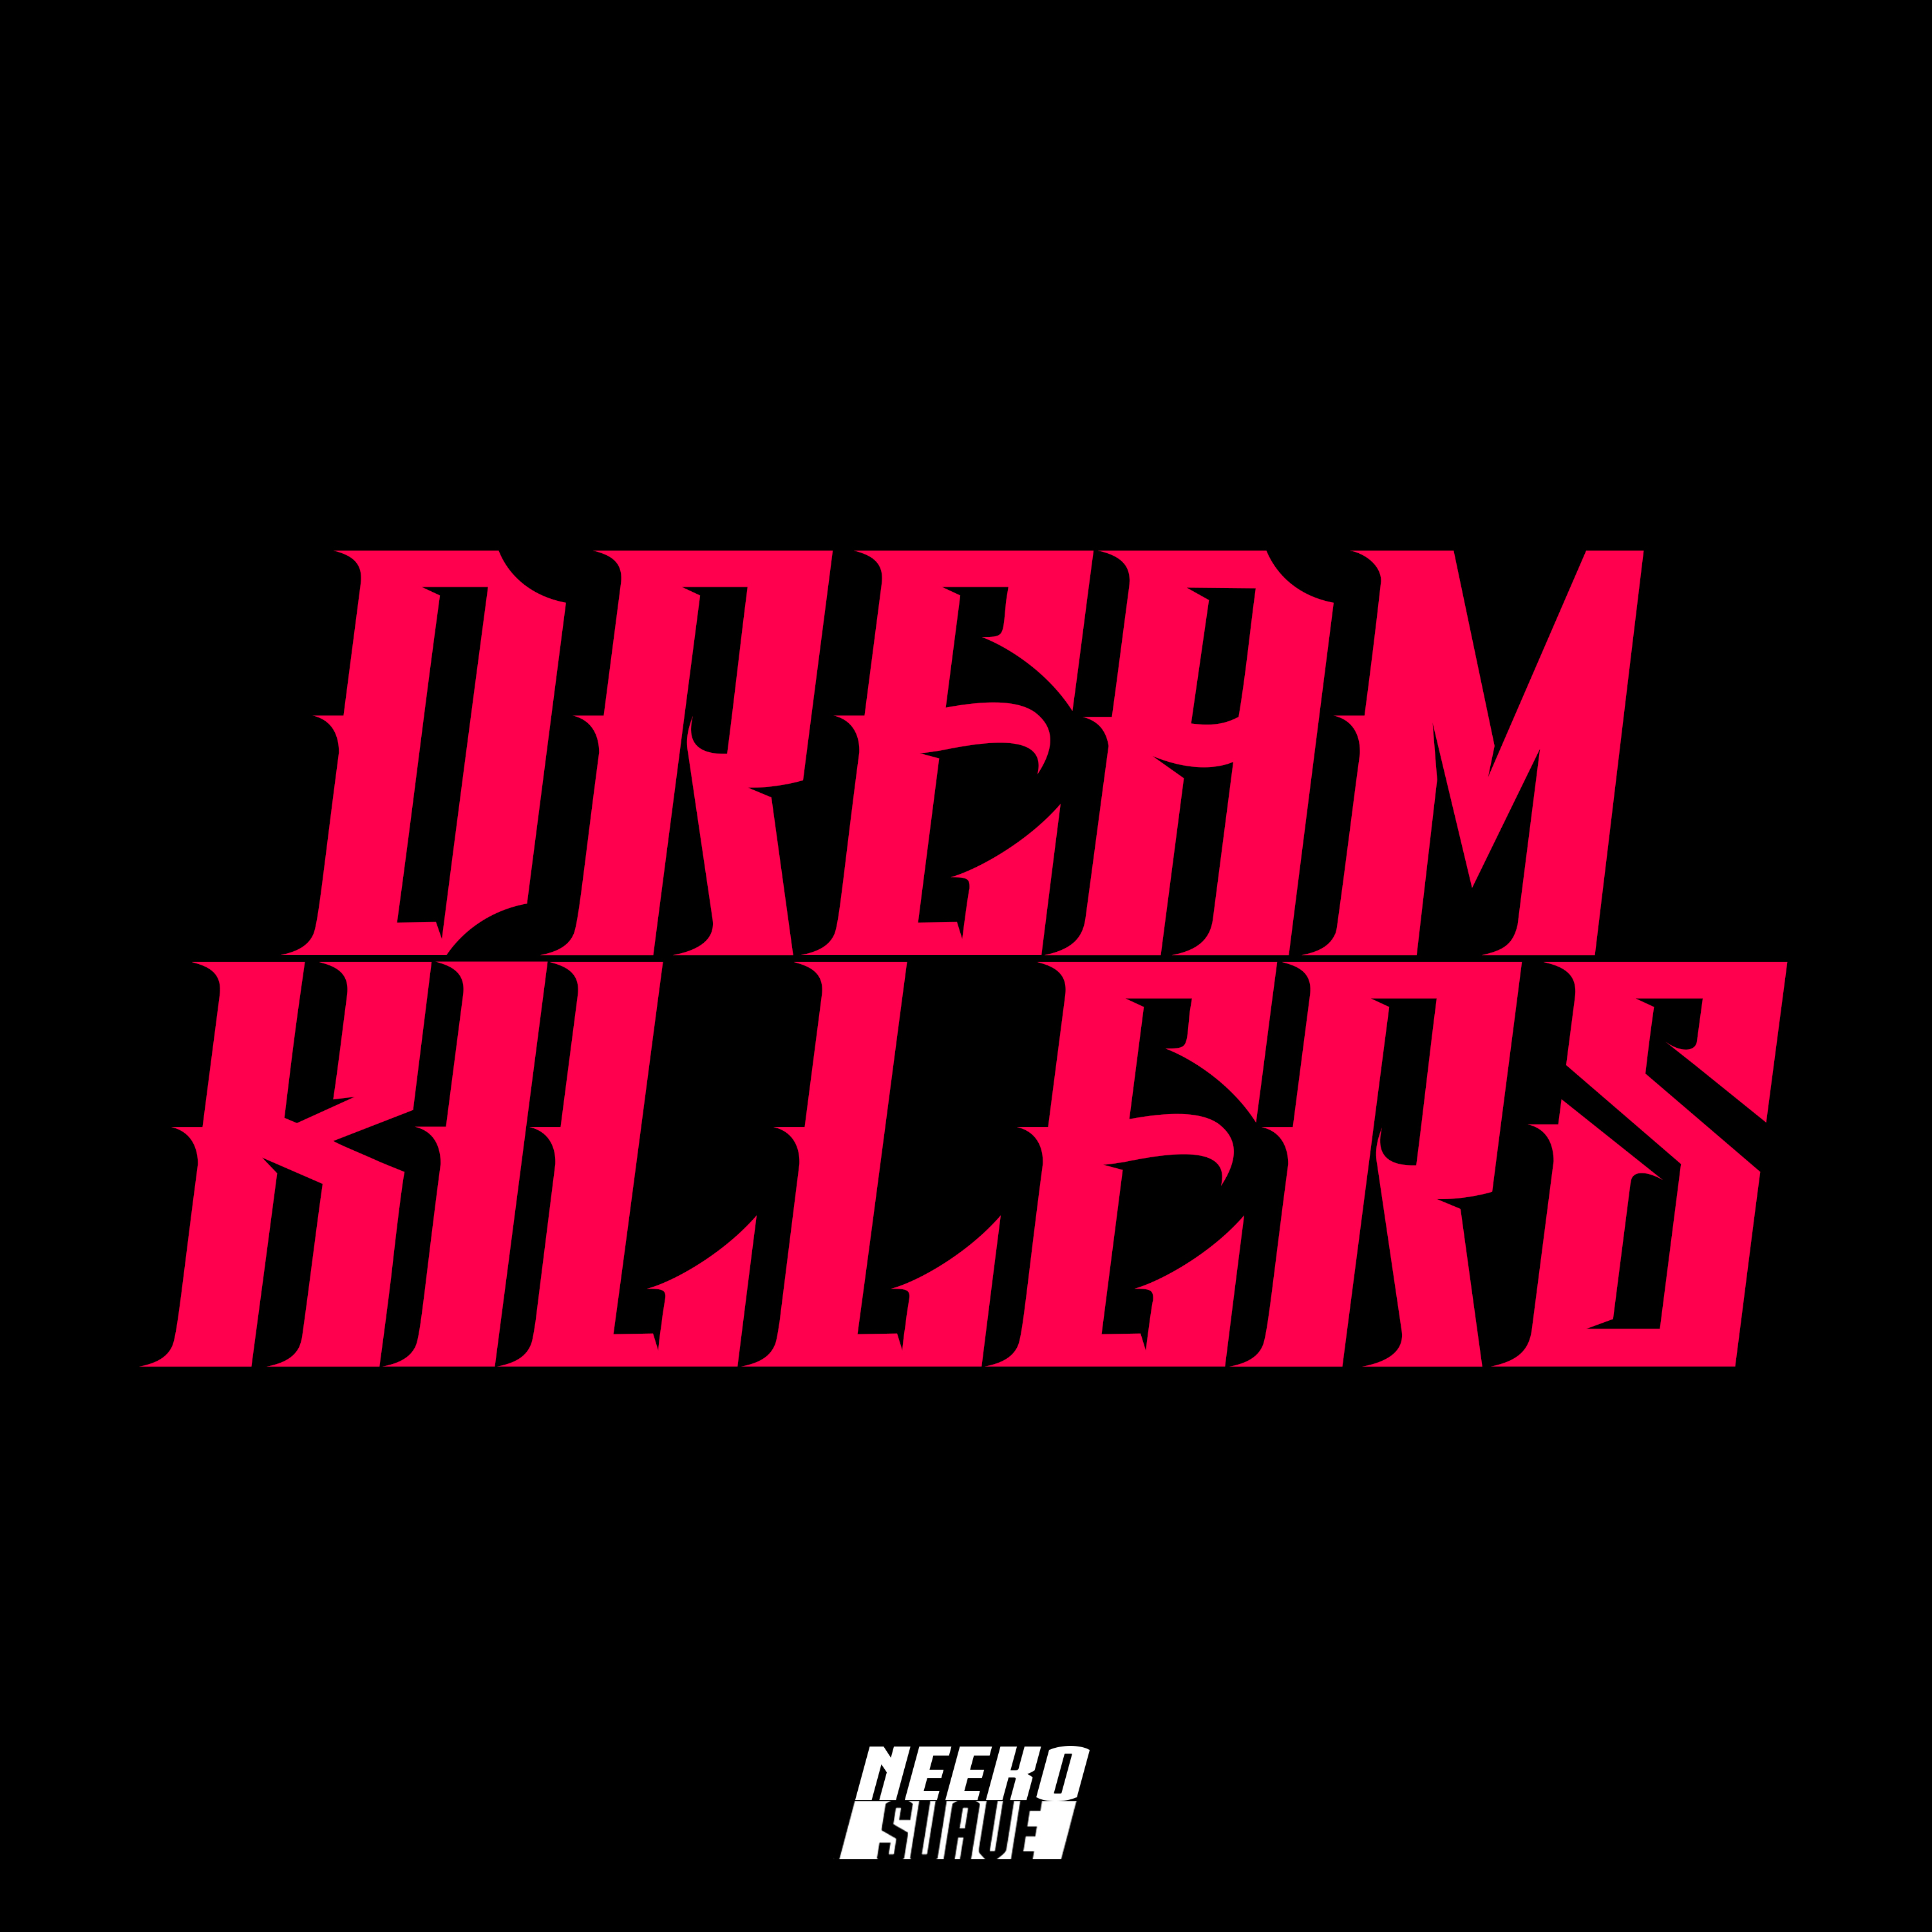 Dream killers